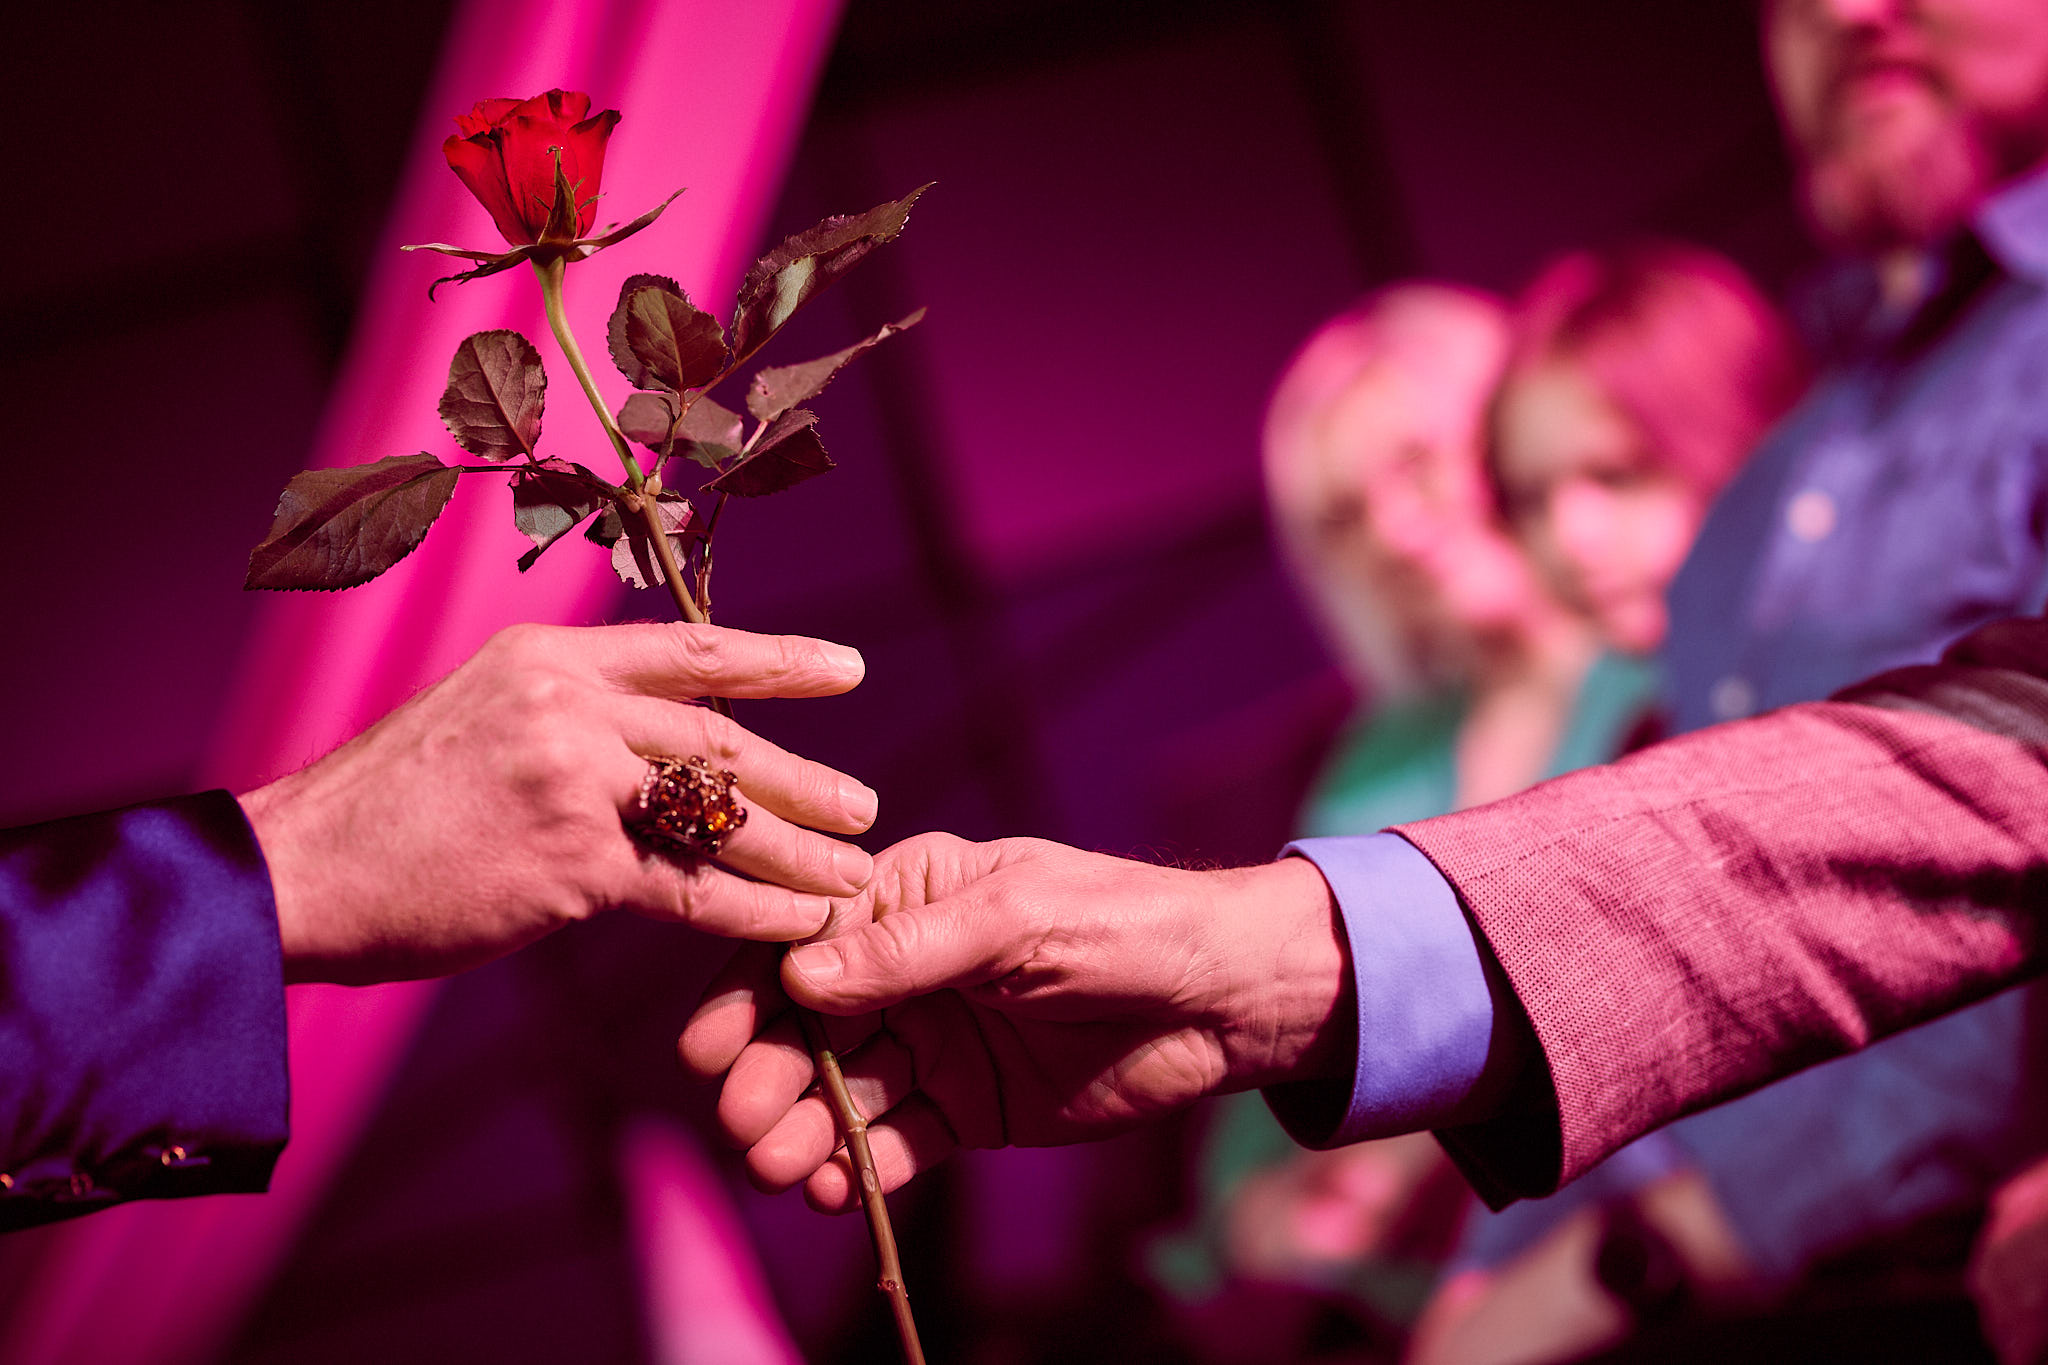 Käsi ojentaa ruusua toiselle.